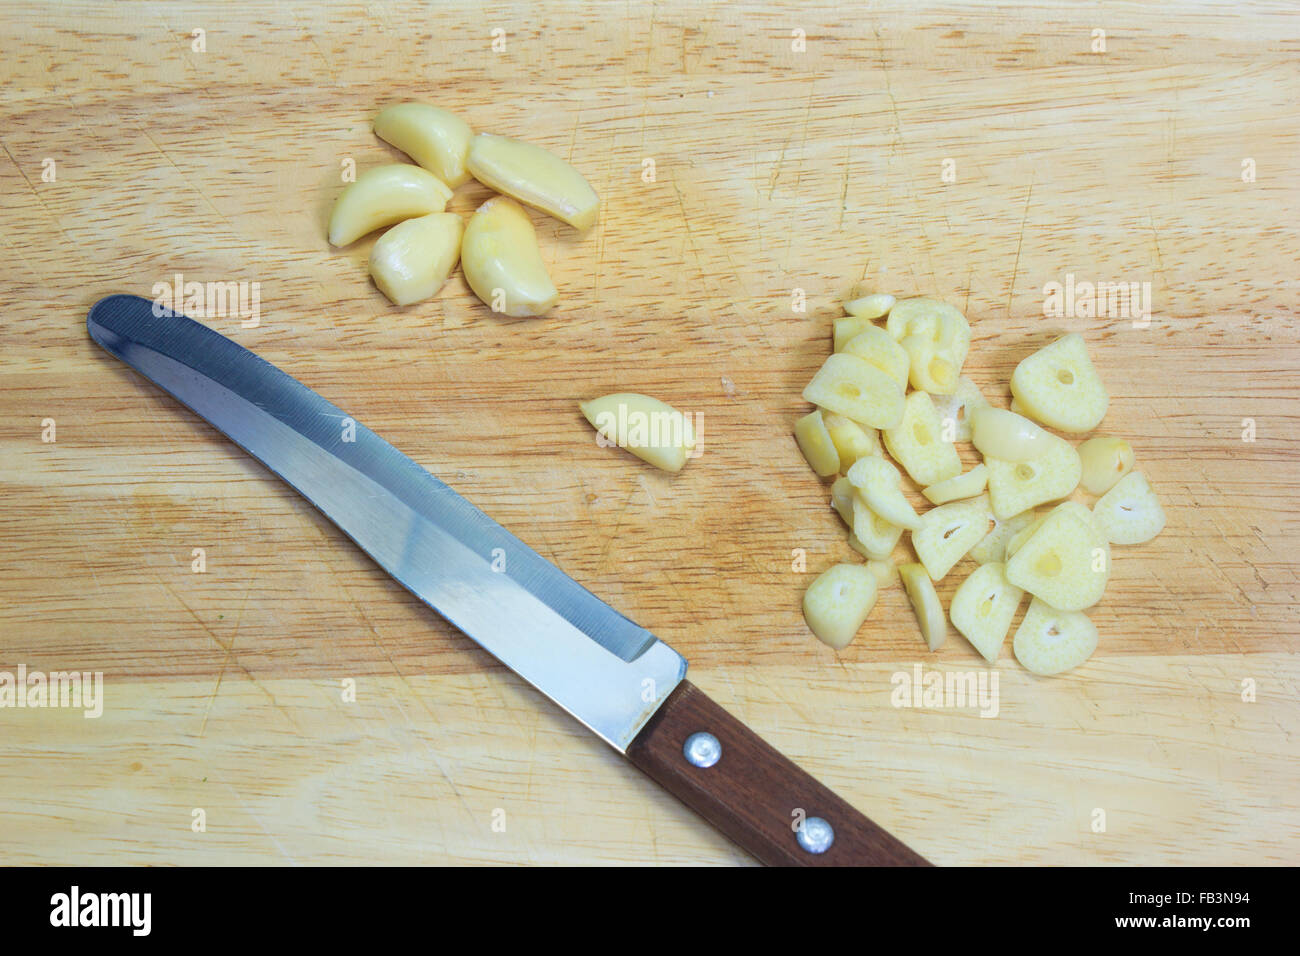 ิฟแาเพนีืก นด chopped garlic with a knife on the cutting board Stock Photo